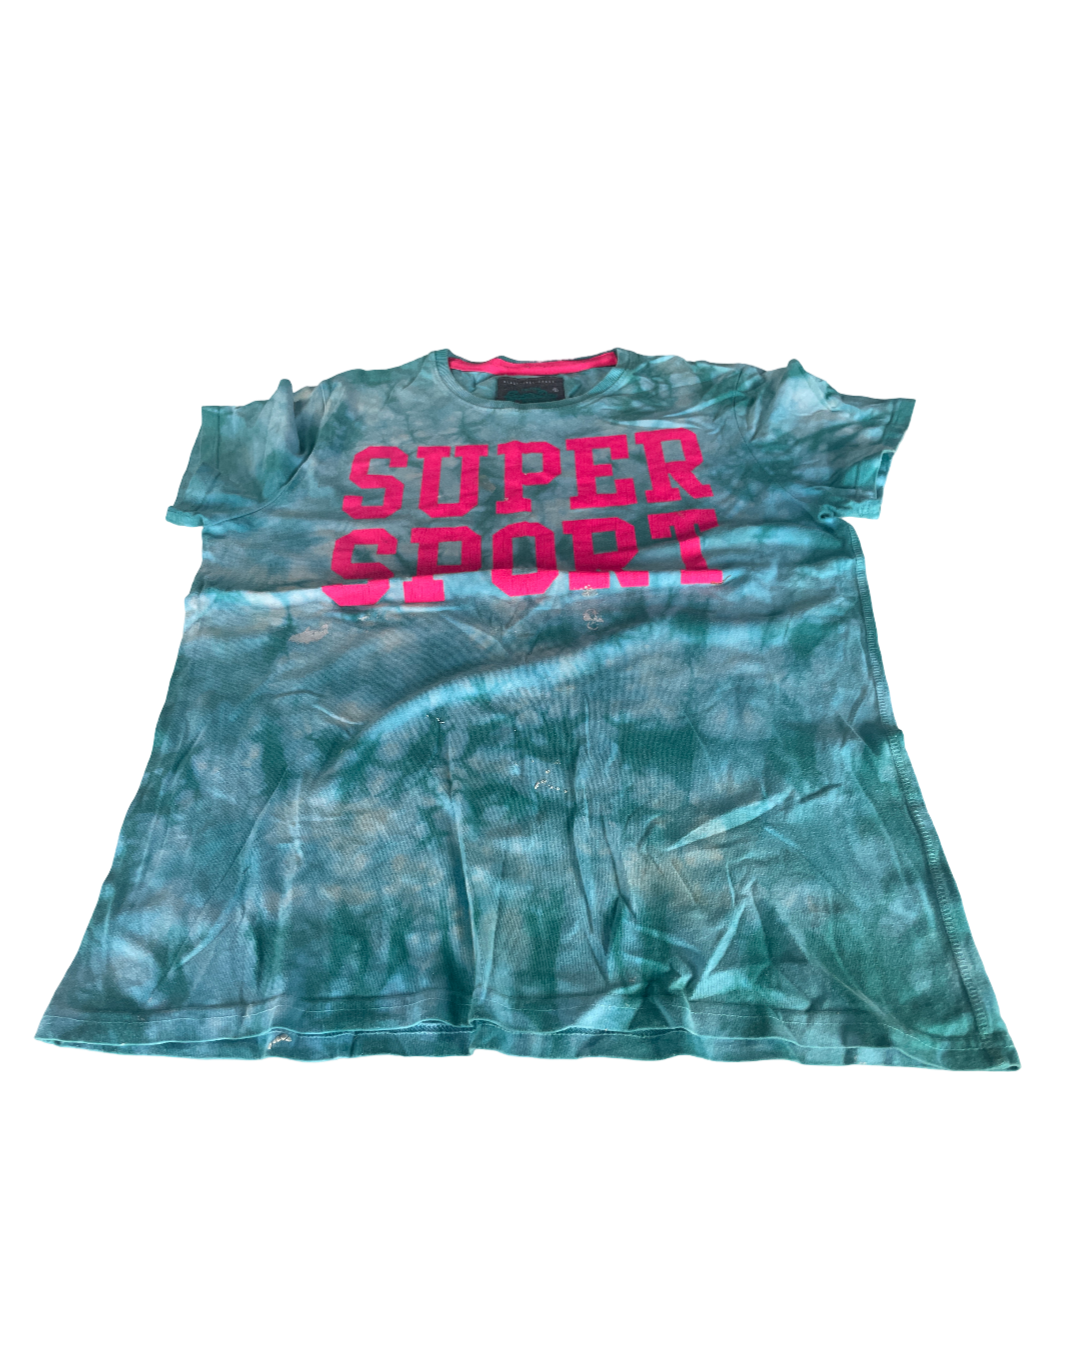 Vintage  Superdry Herren   green t Shirt in size xxl L 30 W 23 |SKU 5011